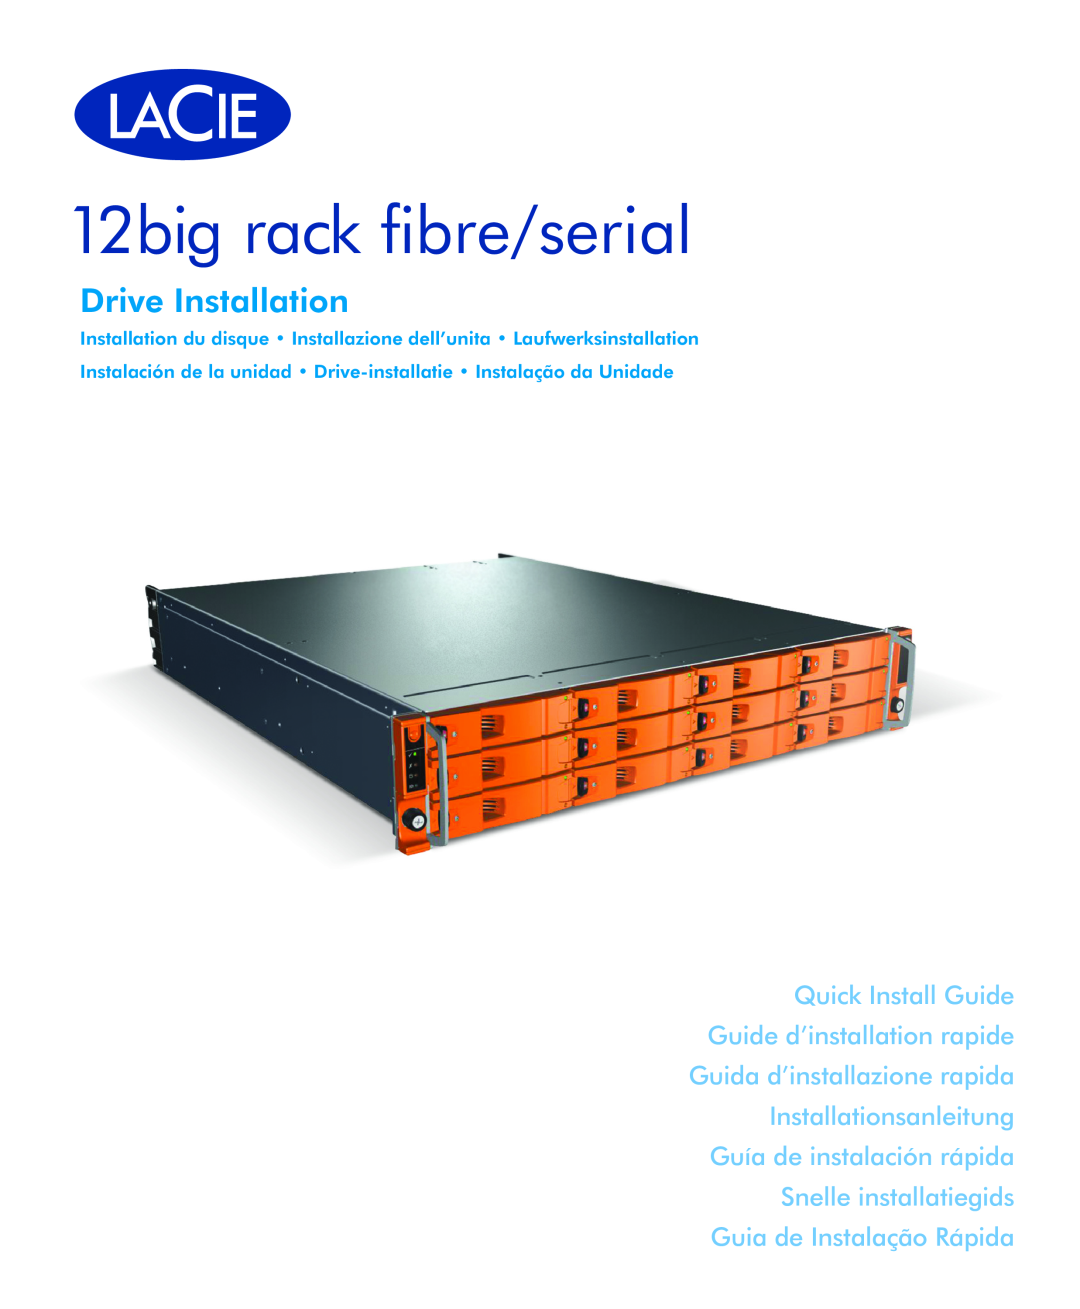 LaCie manual 12big rack fibre/serial, Drive Installation, Quick Install Guide Guide d’installation rapide 